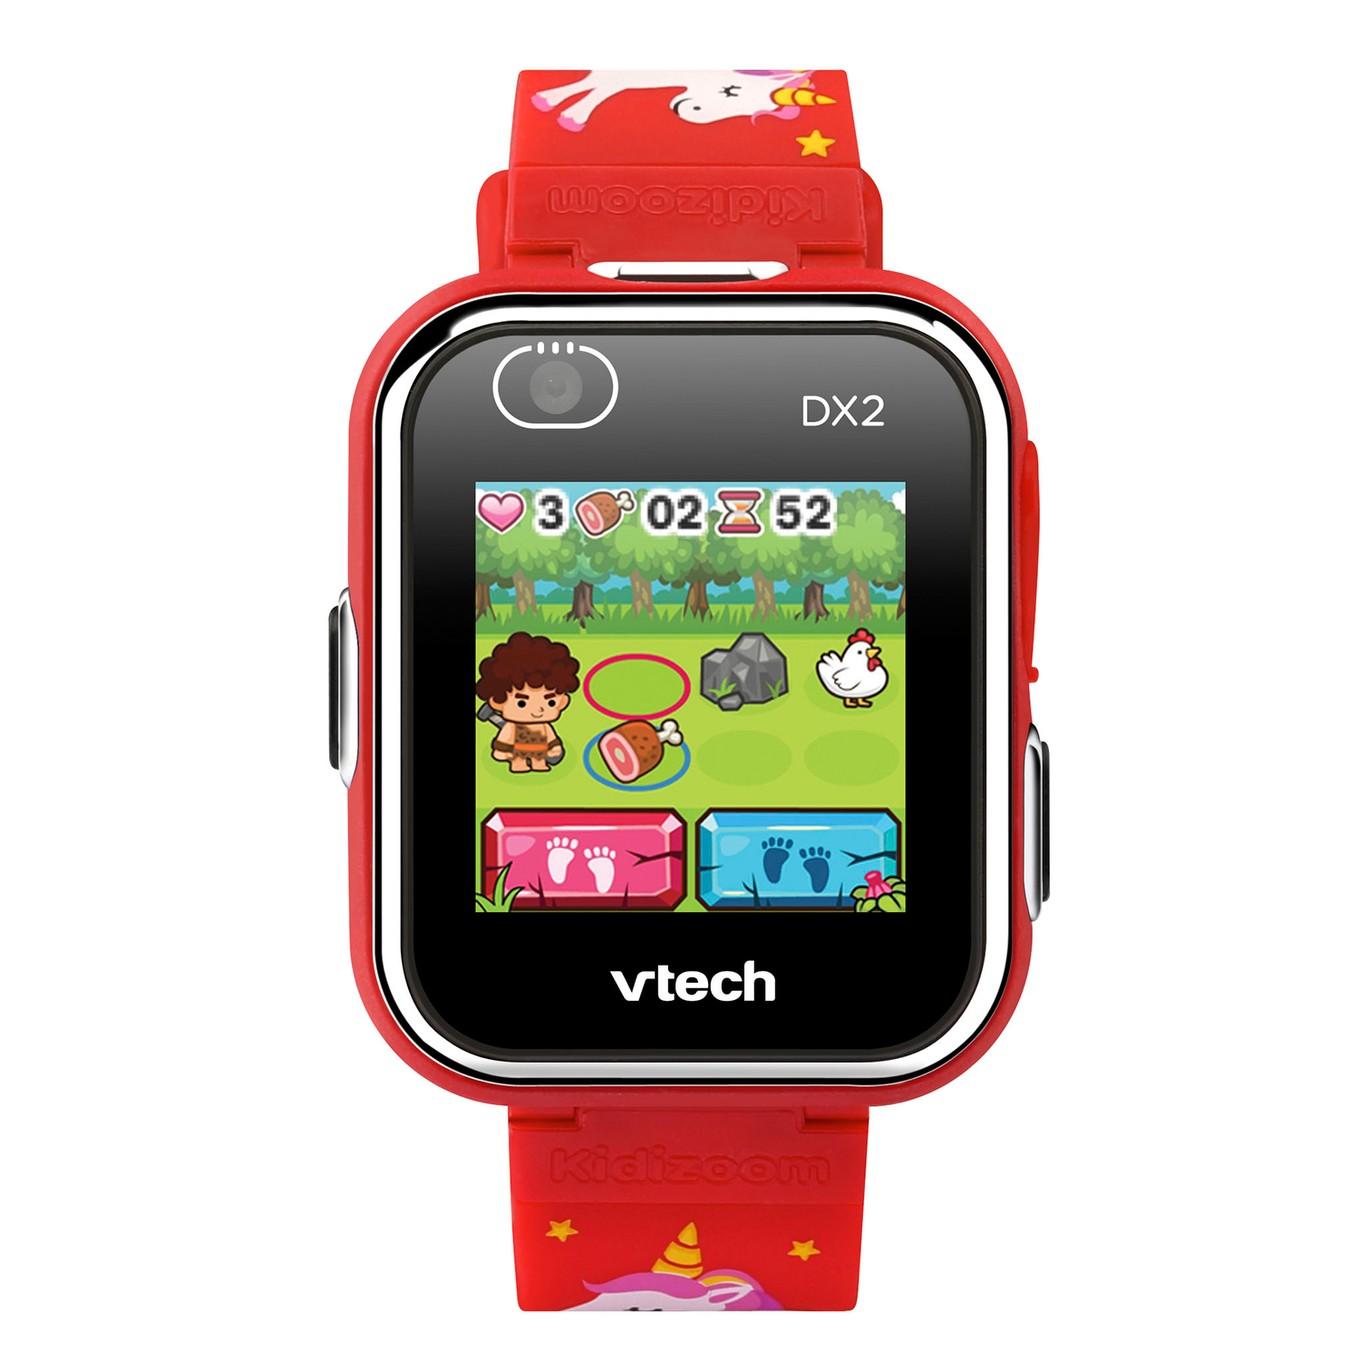 vtech dx2 kidizoom smartwatch